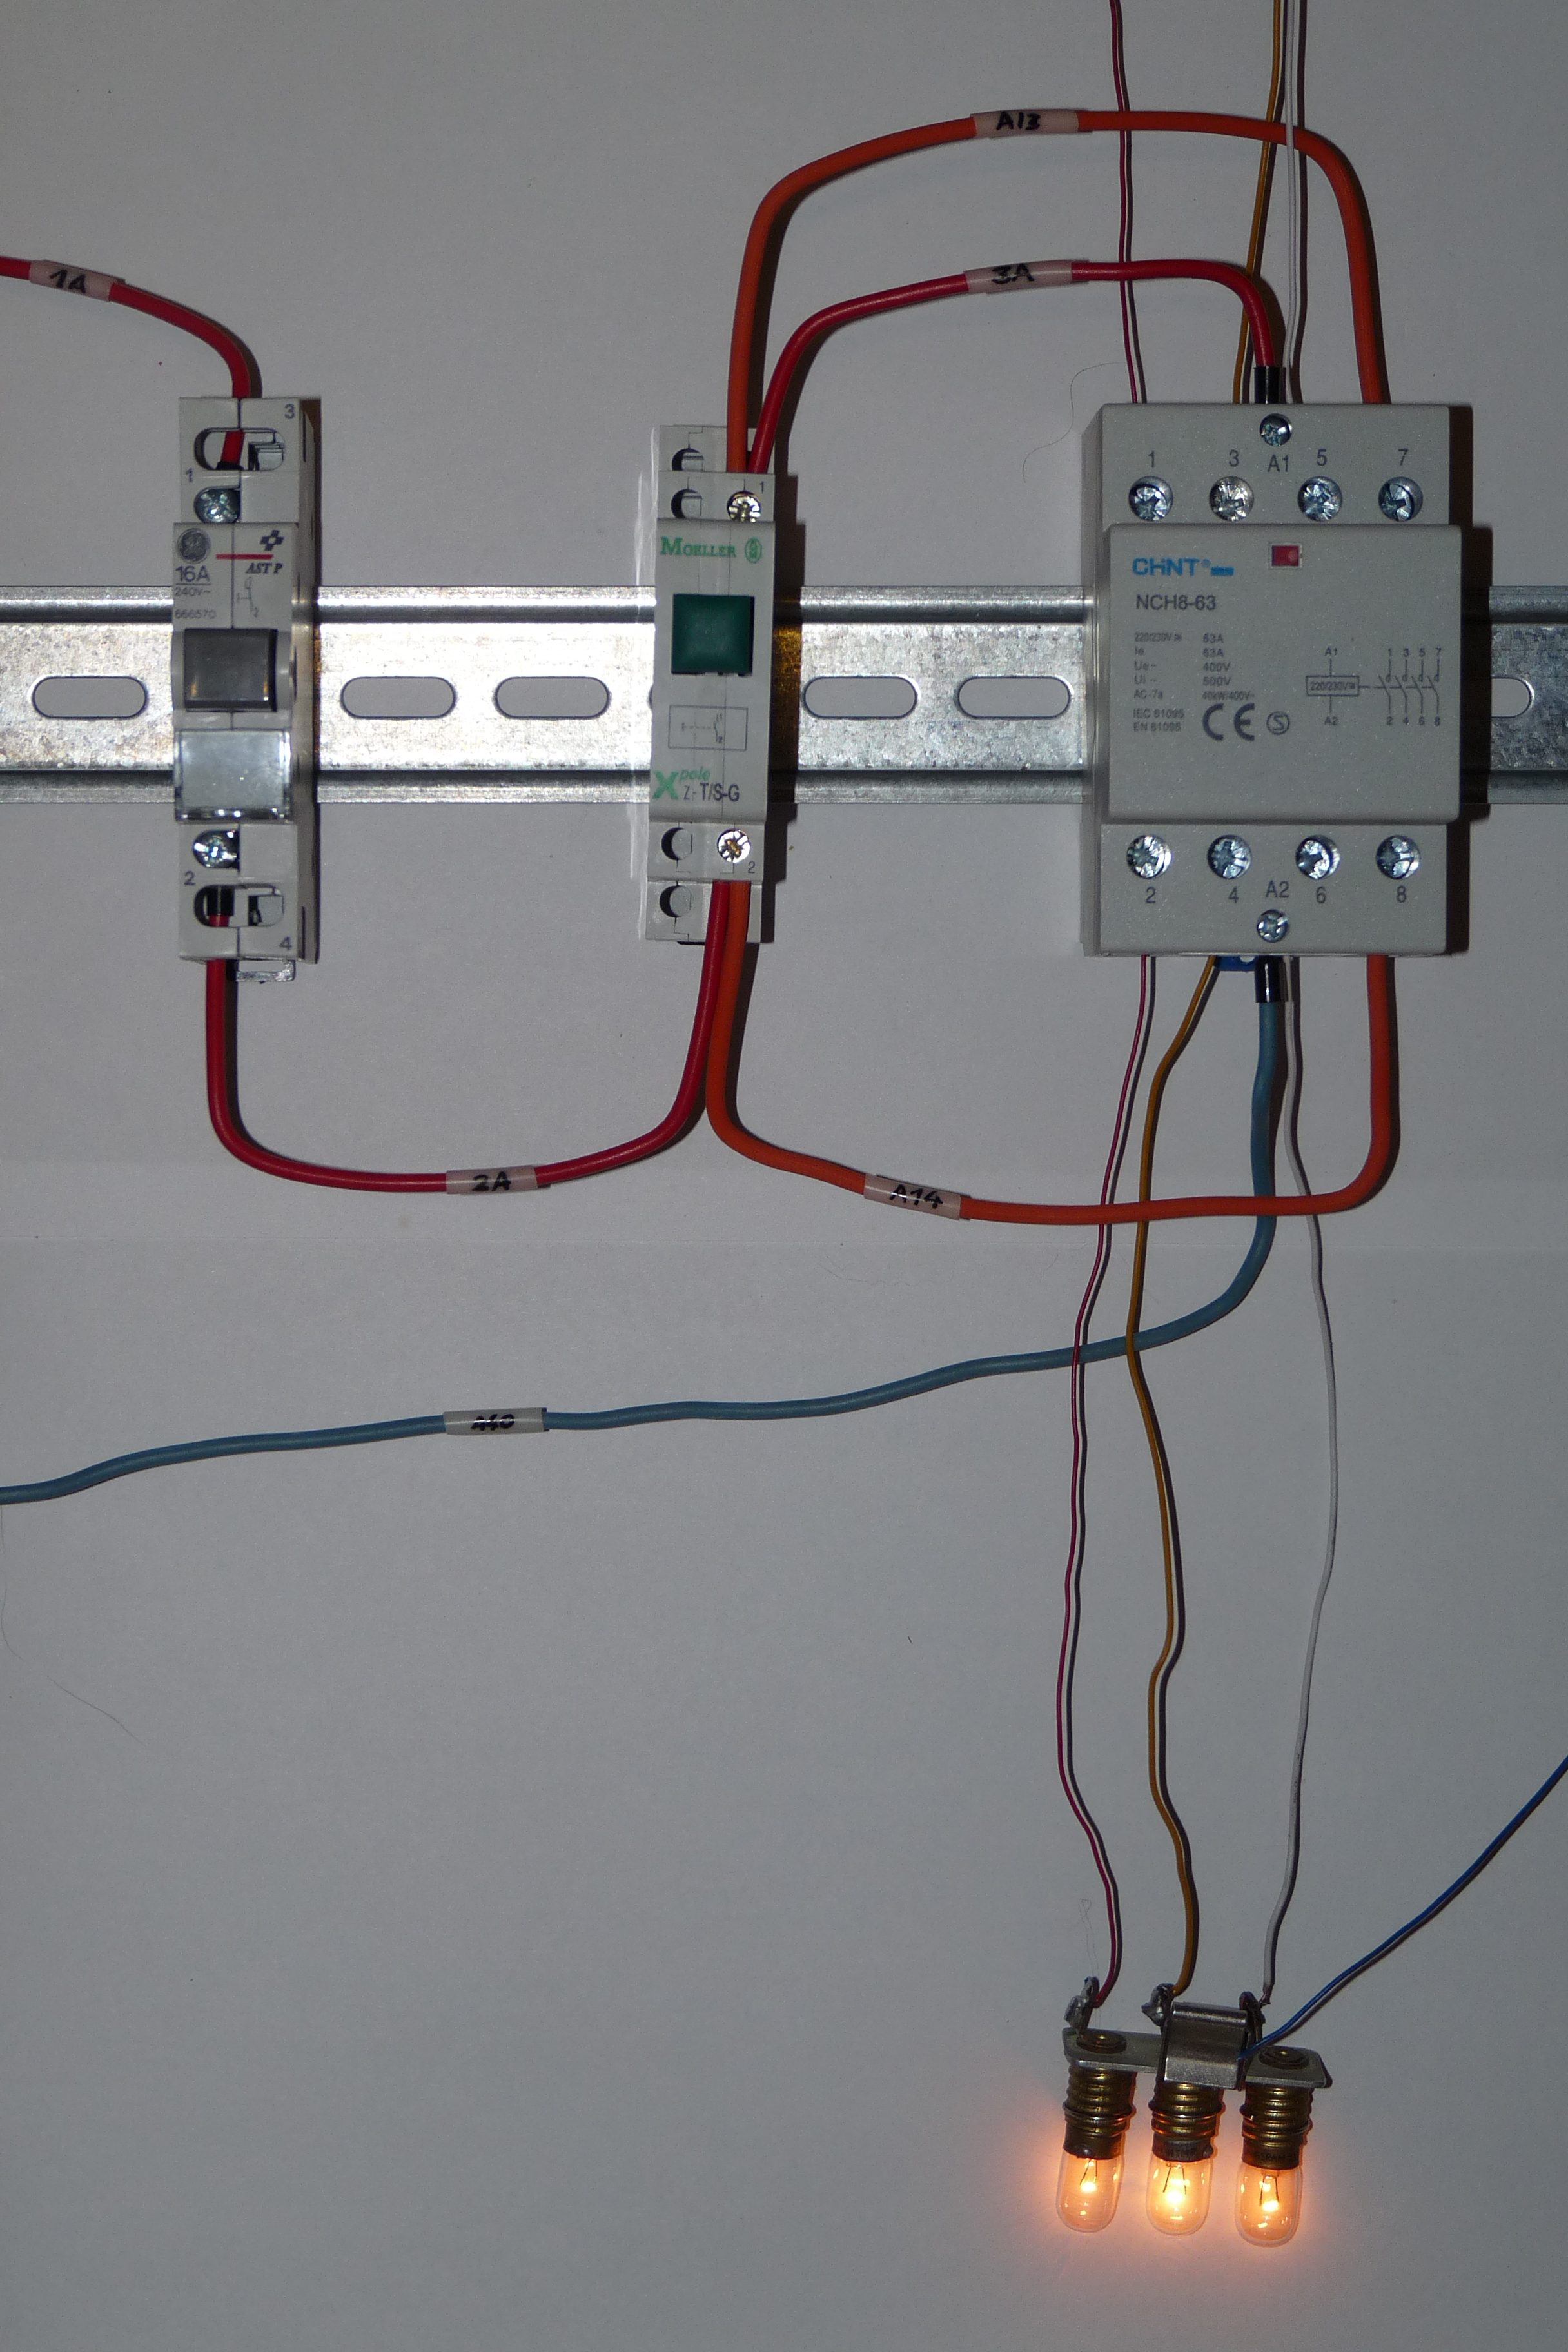 Le télérupteur permet d'actionner un éclairage avec plusieurs boutons-poussoirs. © Dmitry G, Wikimedia Commons, CC BY-SA 3.0